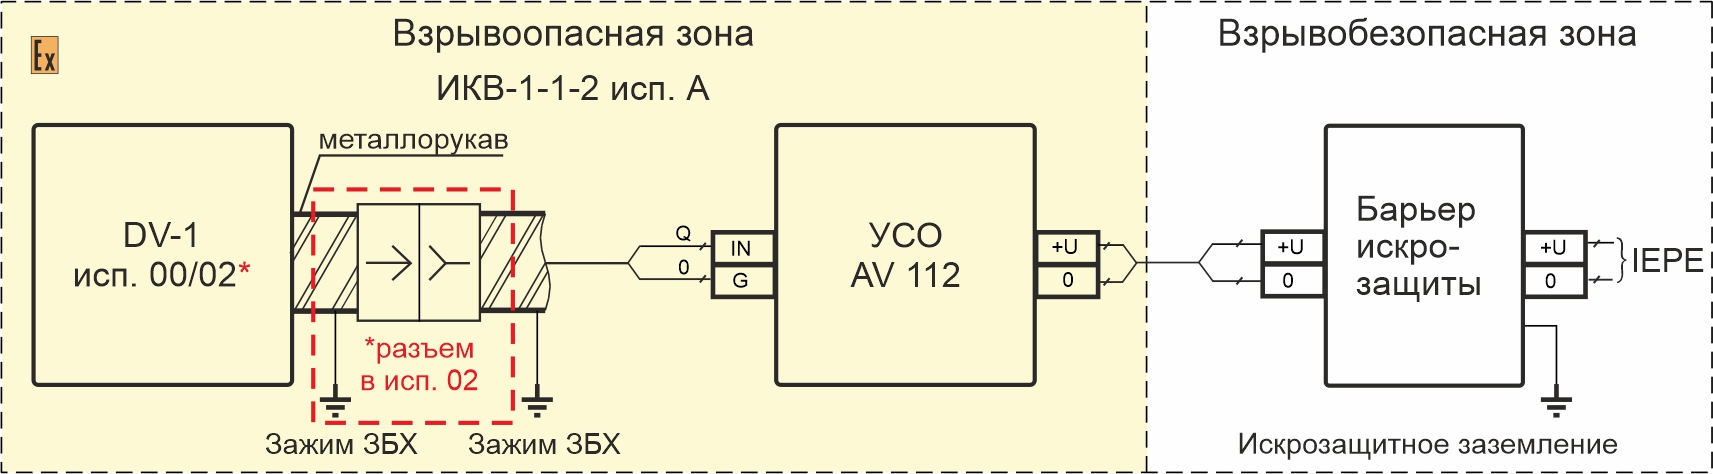 Схемы подключения вибропреобразователей DV-1